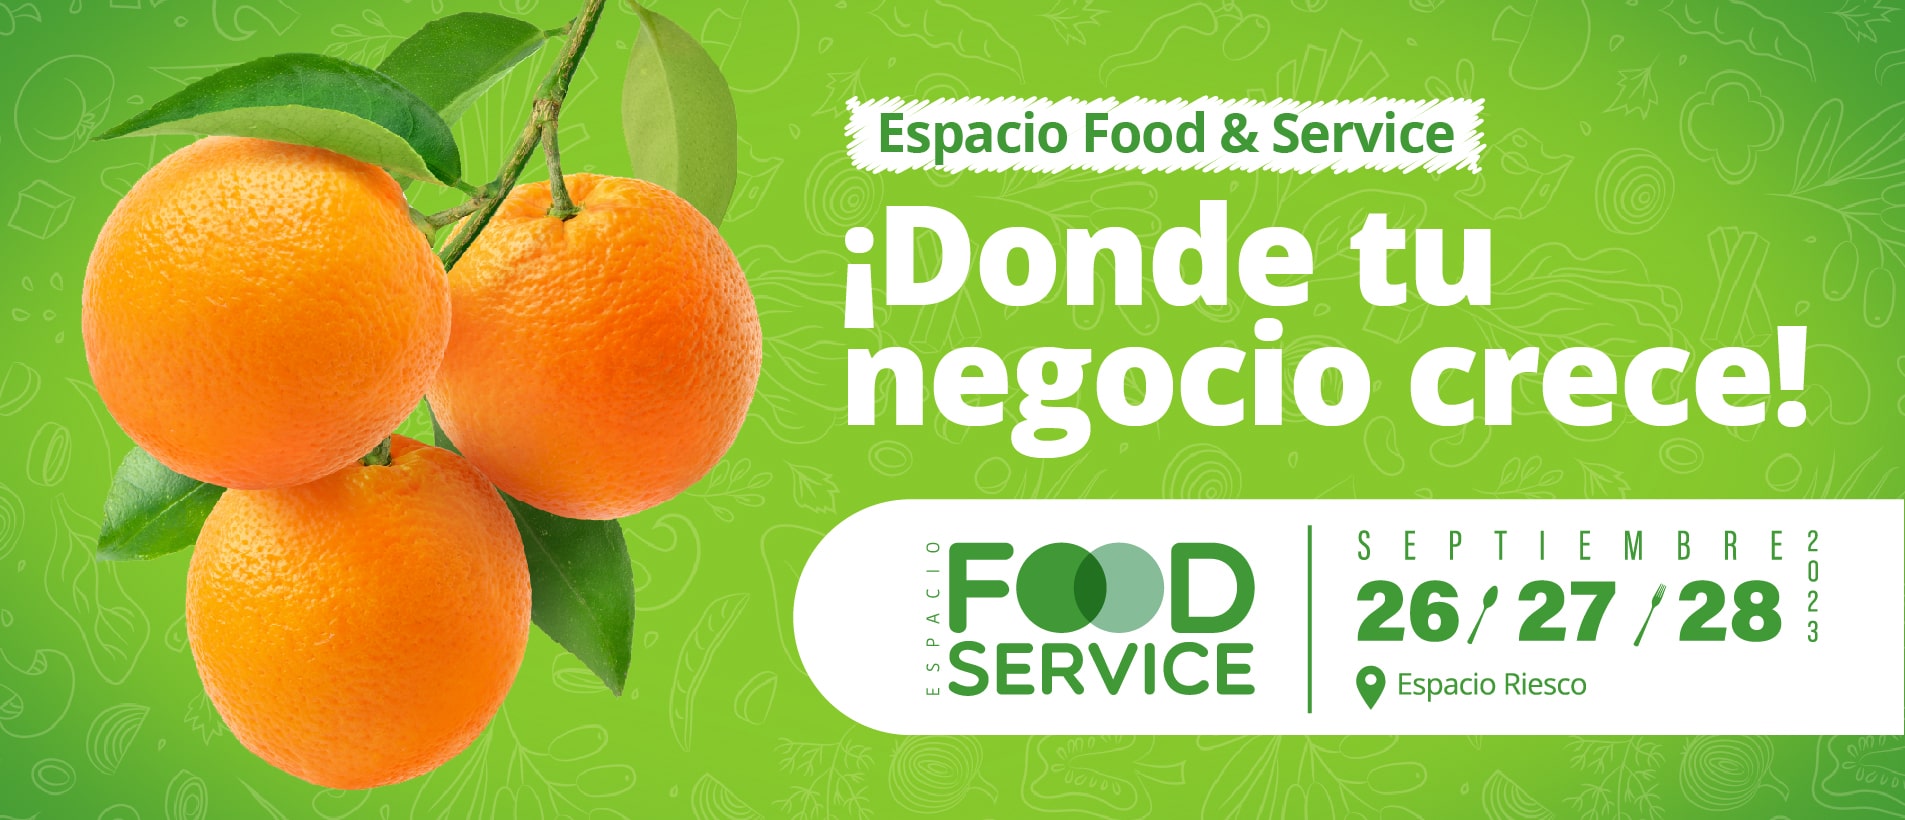 Espacio Food & Service es la feria alimentaria profesional más importante de Chile.